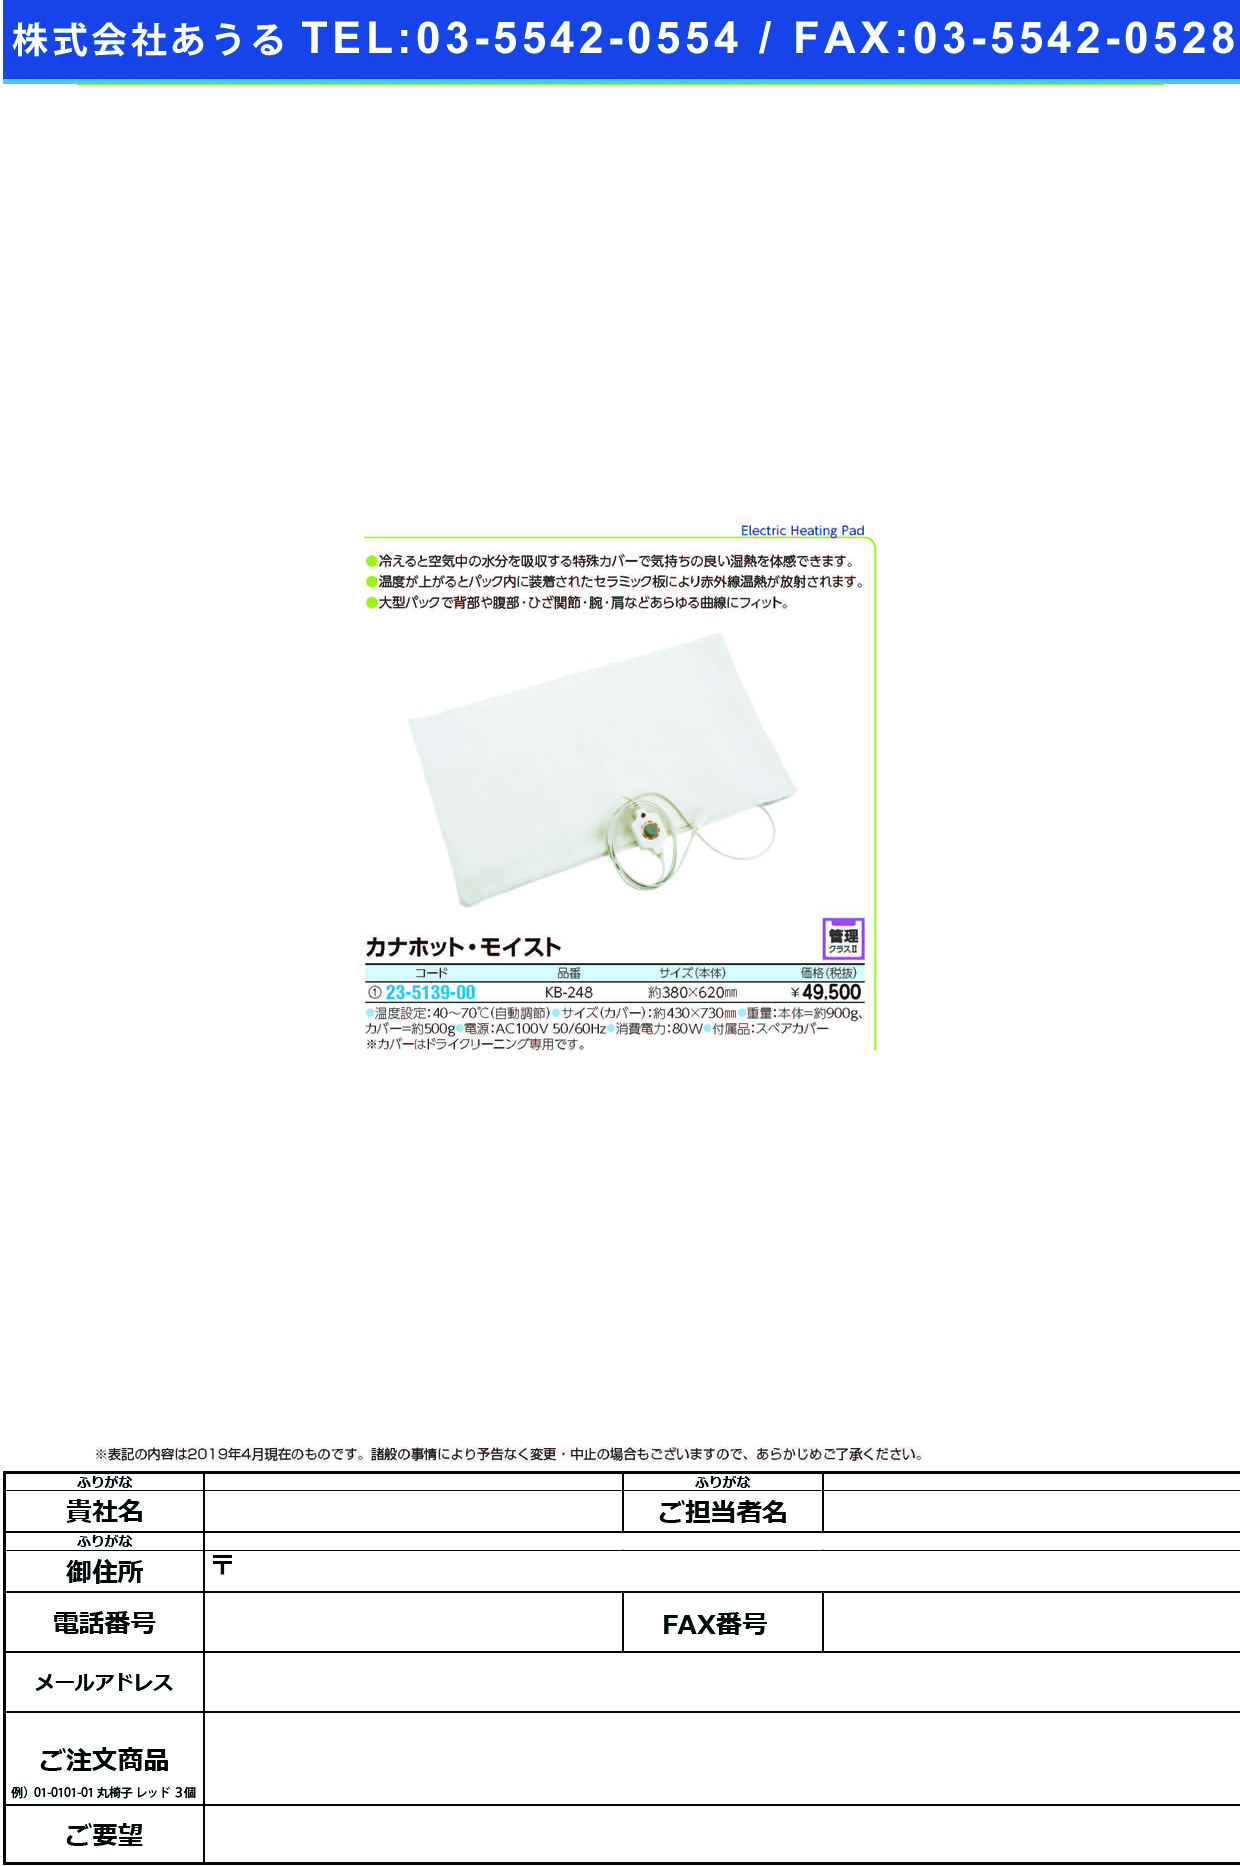 (23-5139-00)カナホット・モイスト KB-248 ｶﾅﾎｯﾄﾓｲｽﾄ【1台単位】【2019年カタログ商品】